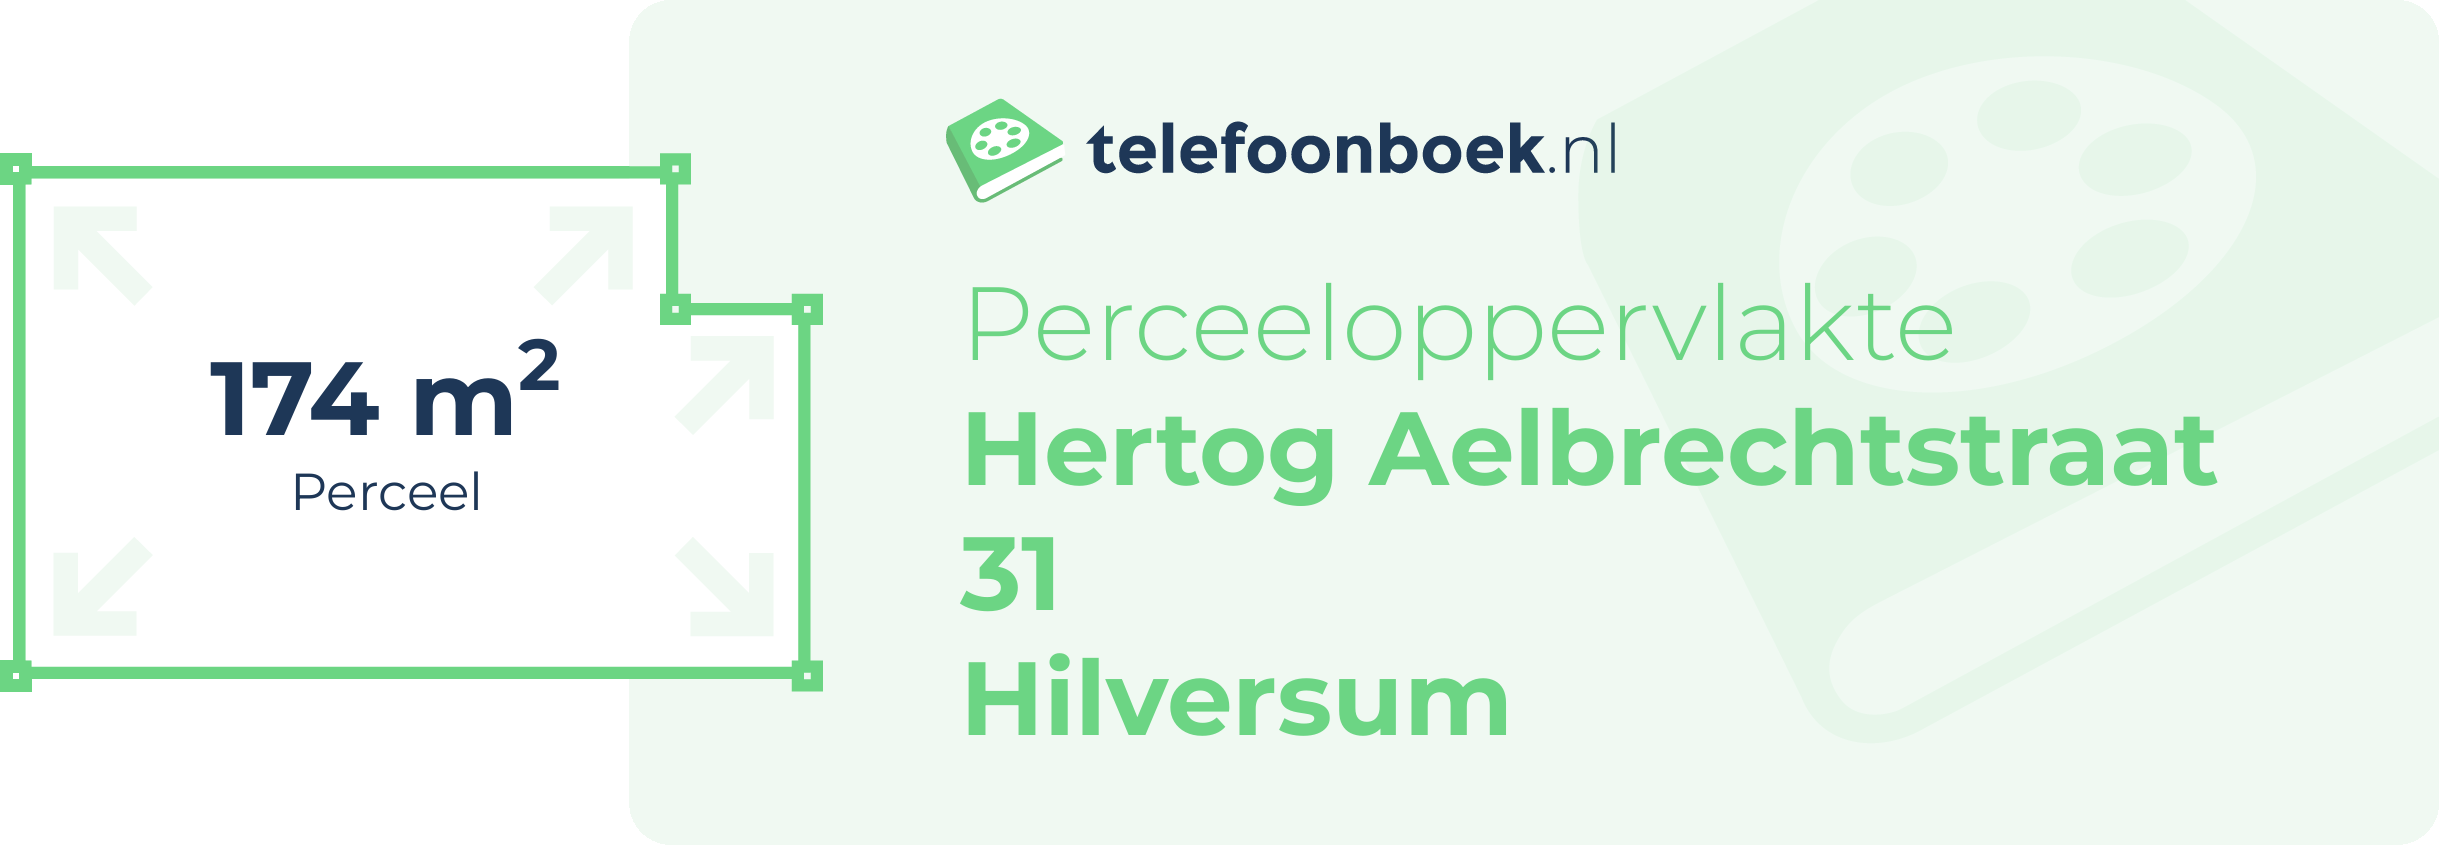 Perceeloppervlakte Hertog Aelbrechtstraat 31 Hilversum